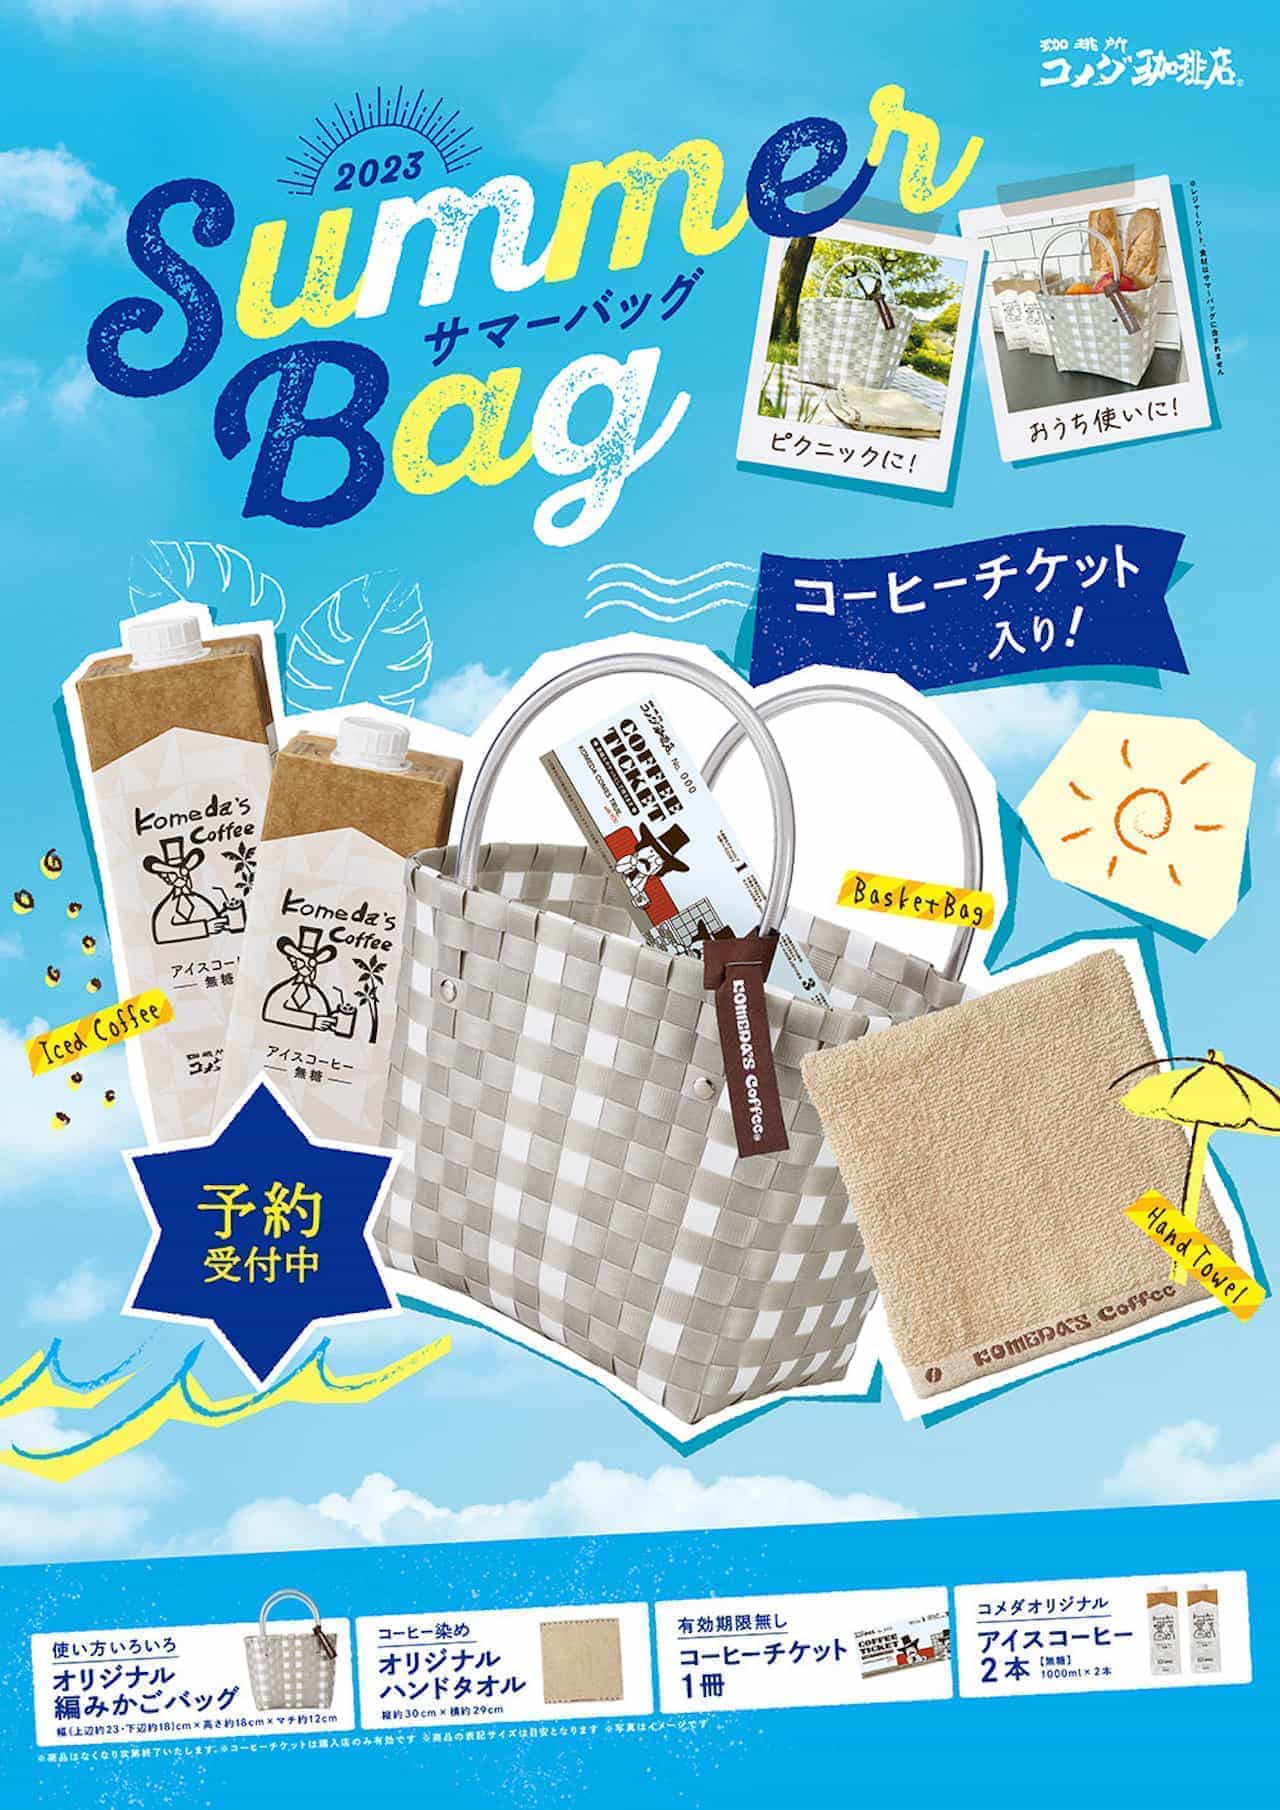 Komeda Coffee Shop "2023 Summer Bag